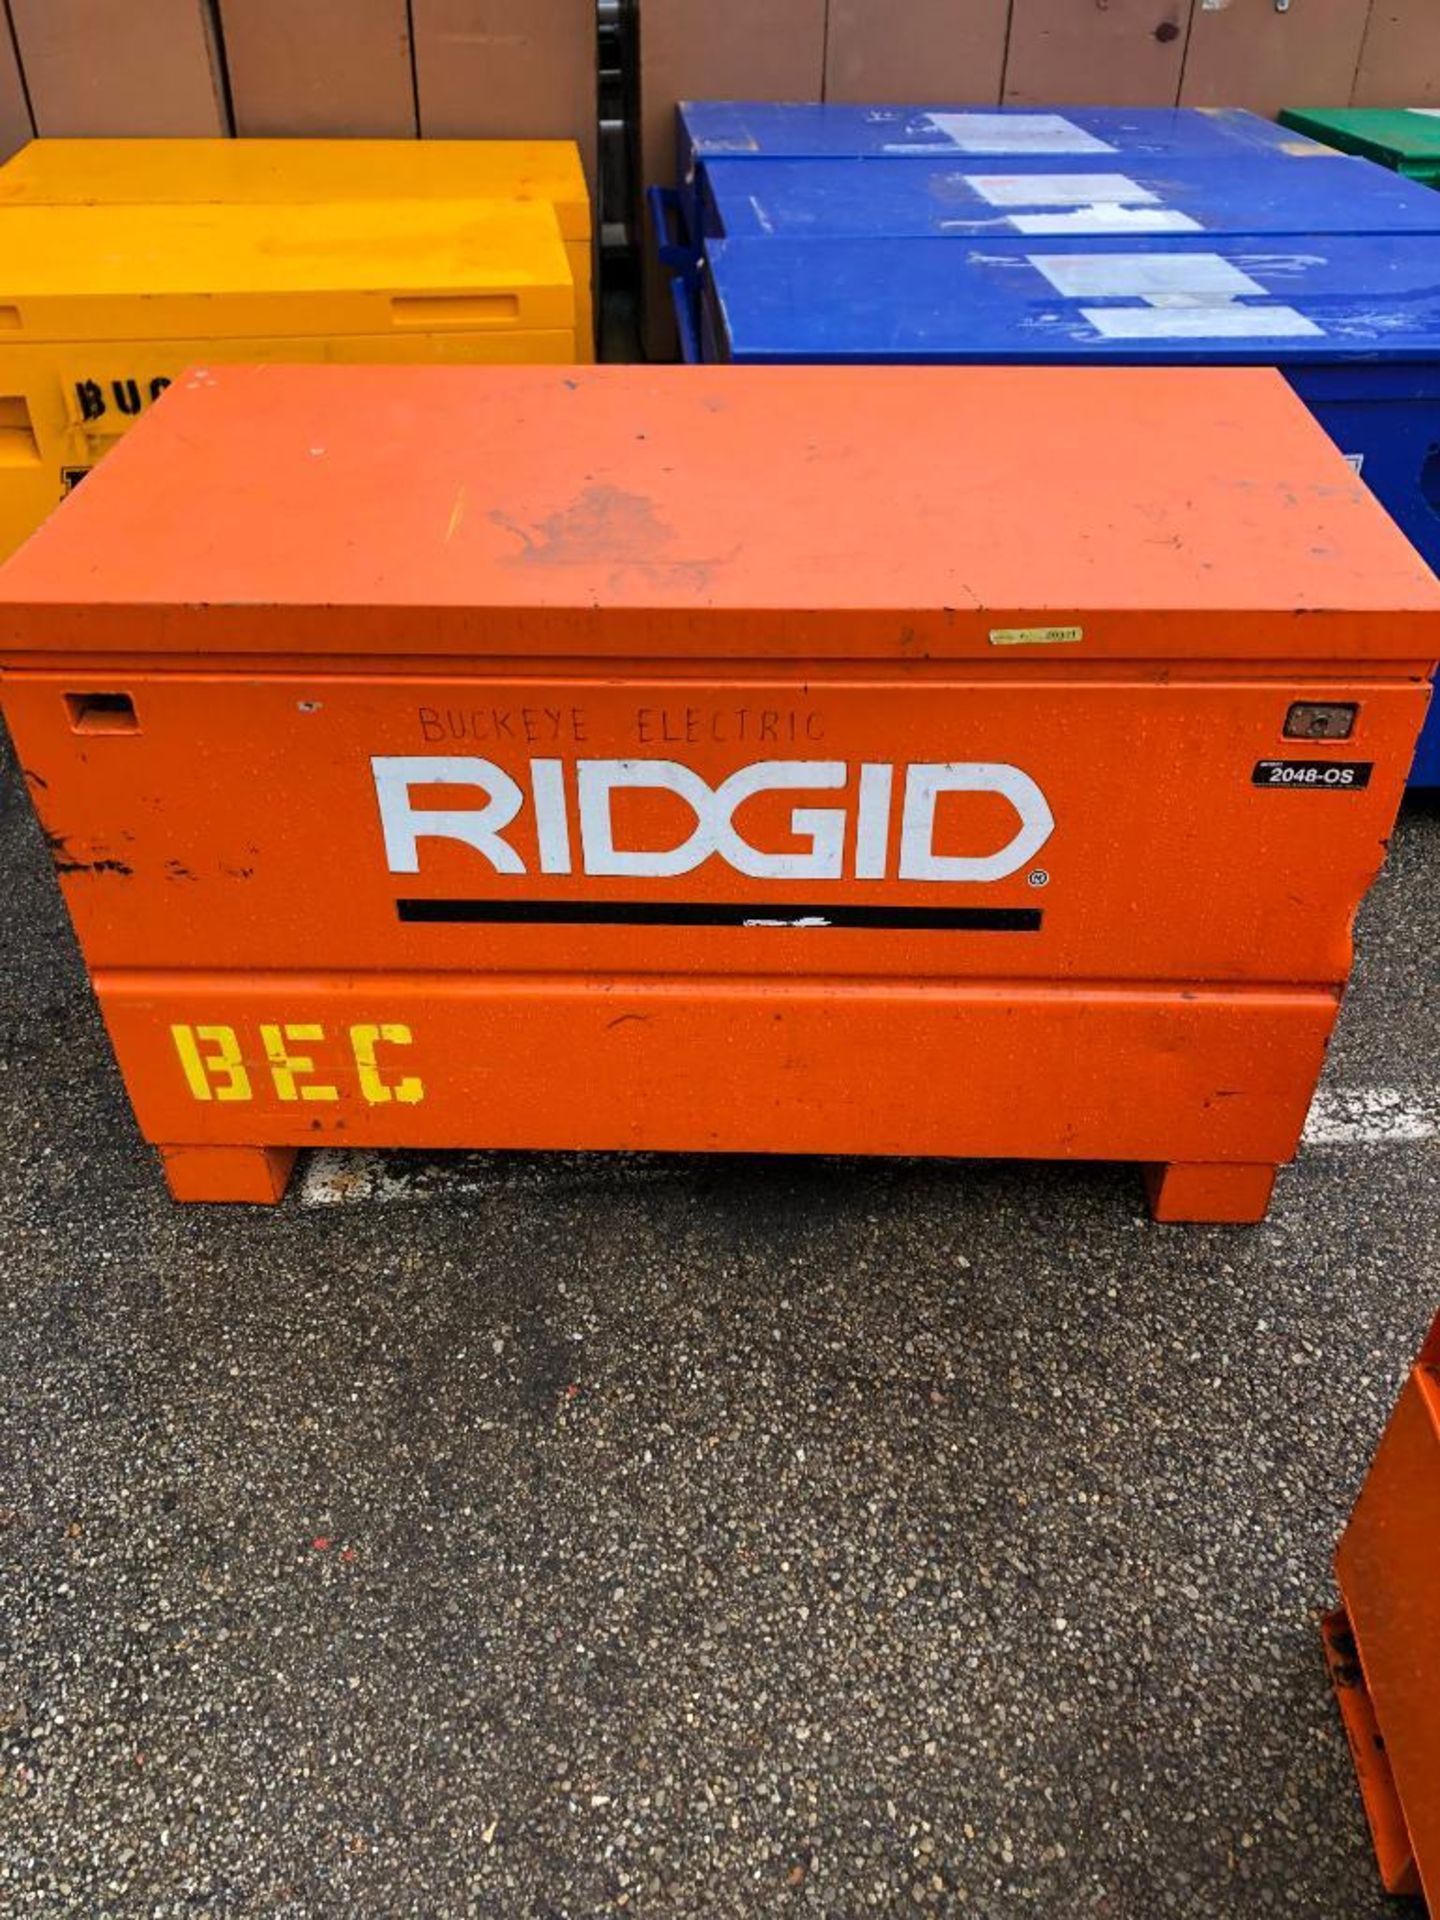 RIDGID JOB BOX, MODEL 2048OS